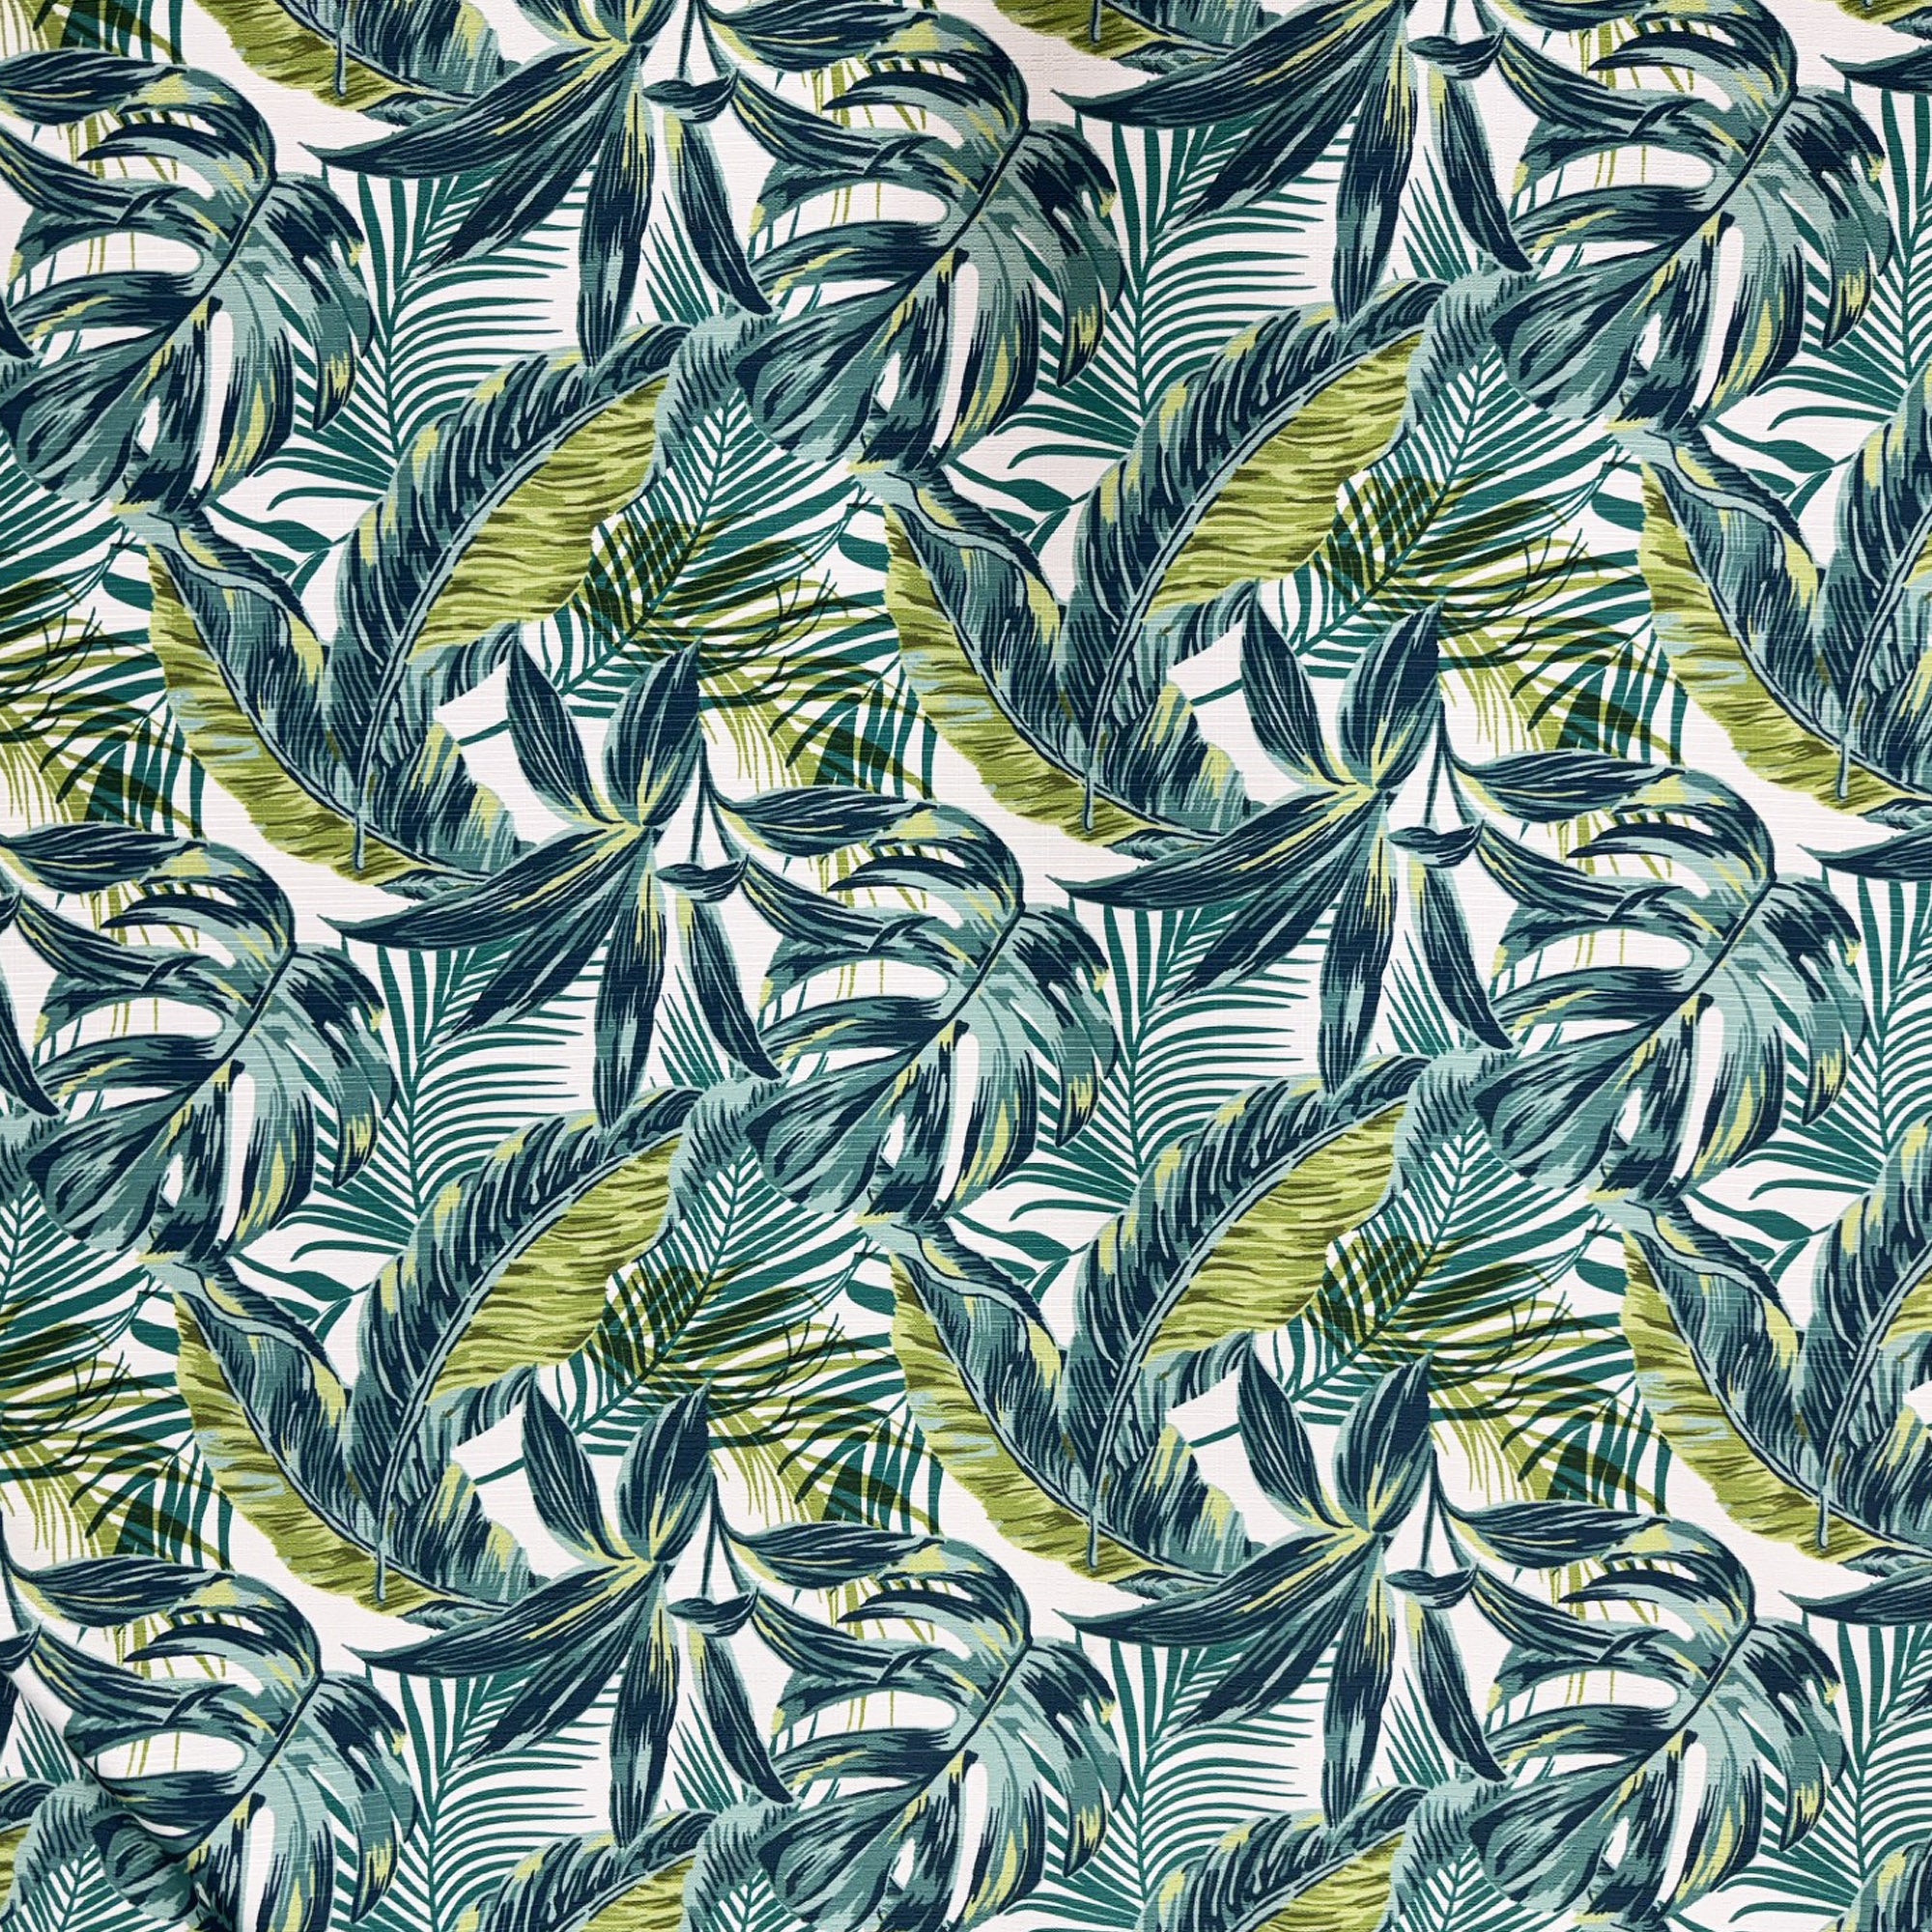 Kendari Fabric | Outdoor Floral Fabric